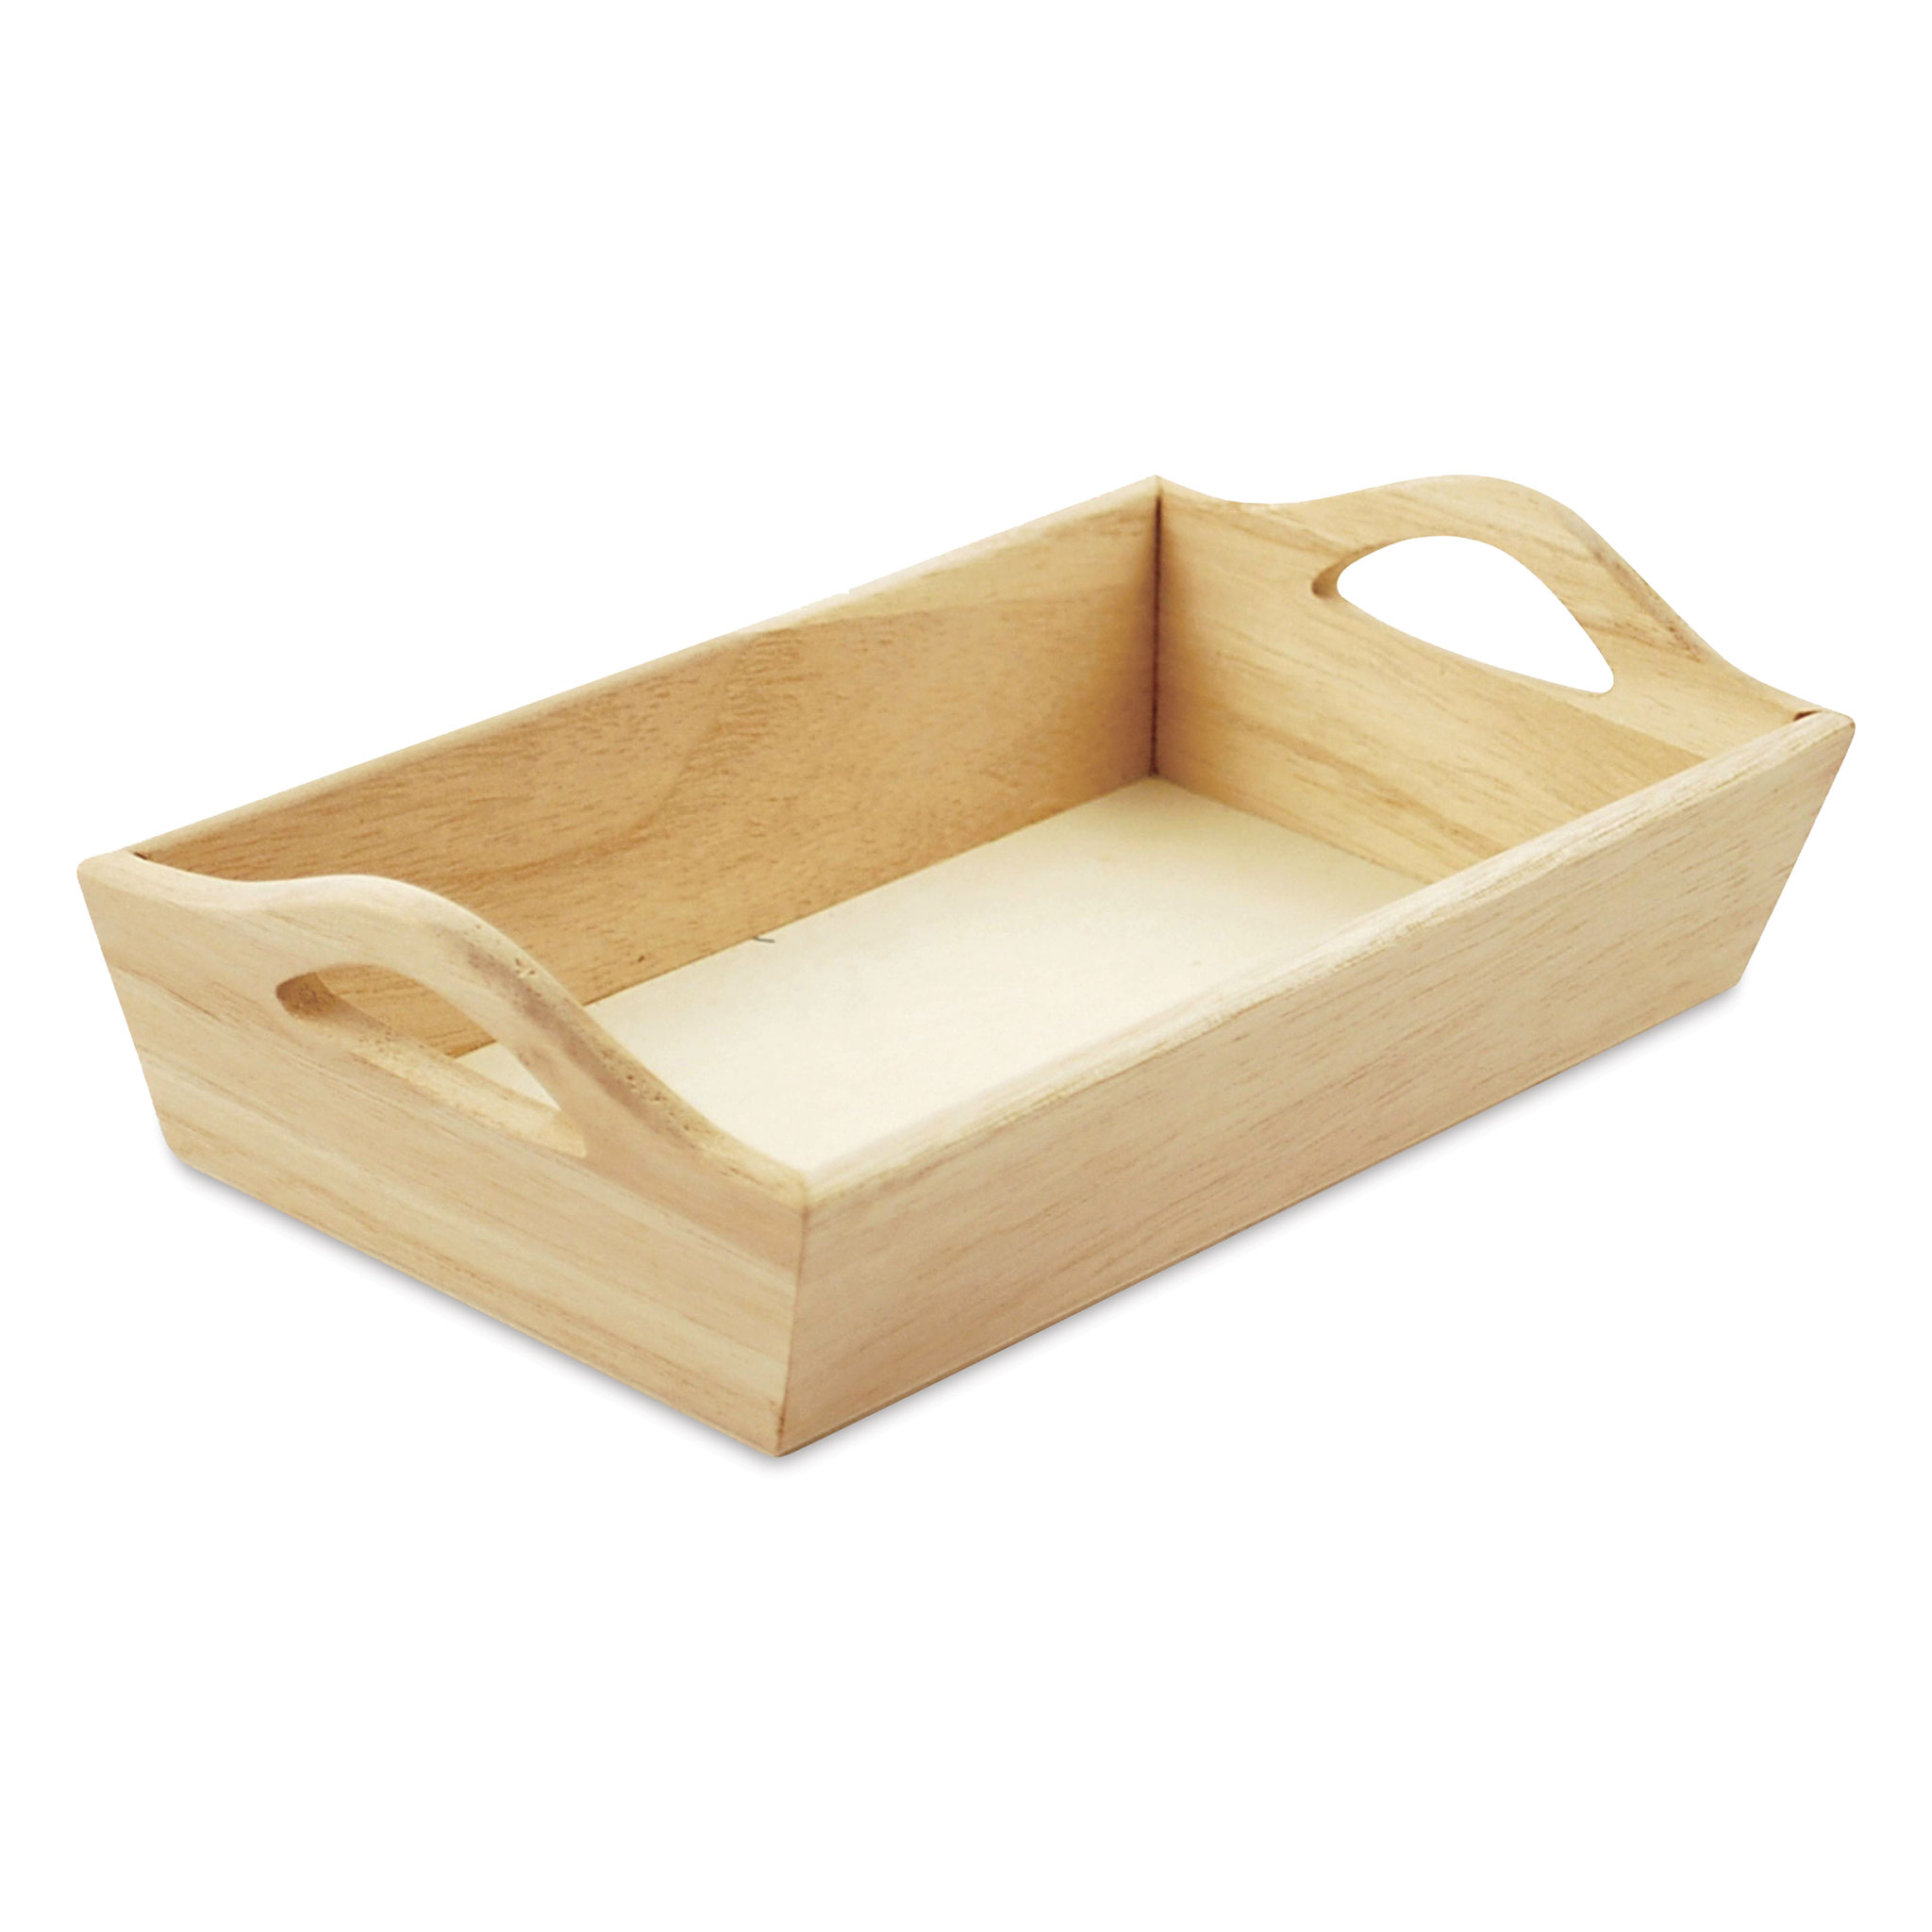 Midwest Products Mini Carving Block Bag - Balsa Wood Assortment, BLICK Art  Materials